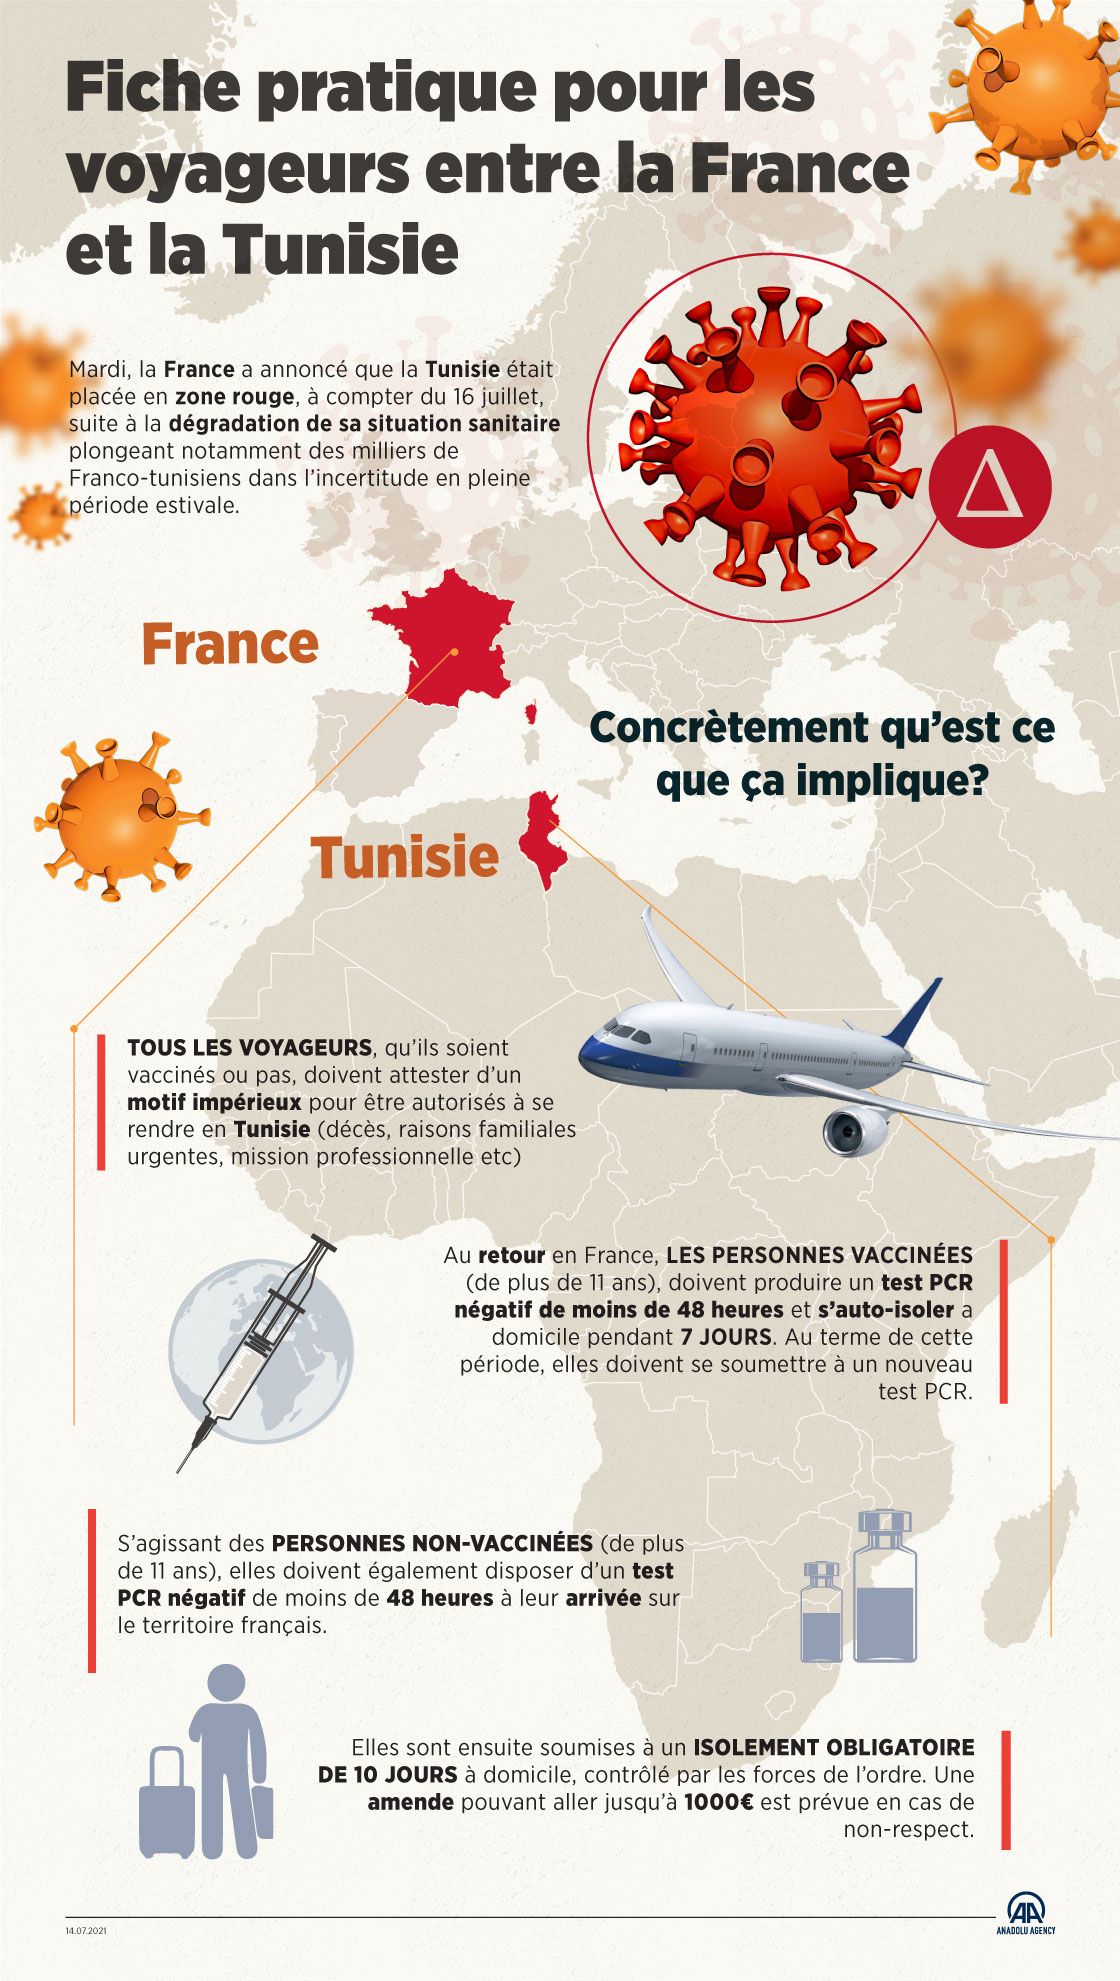 Fiche pratique pour les voyageurs entre la France et la Tunisie 